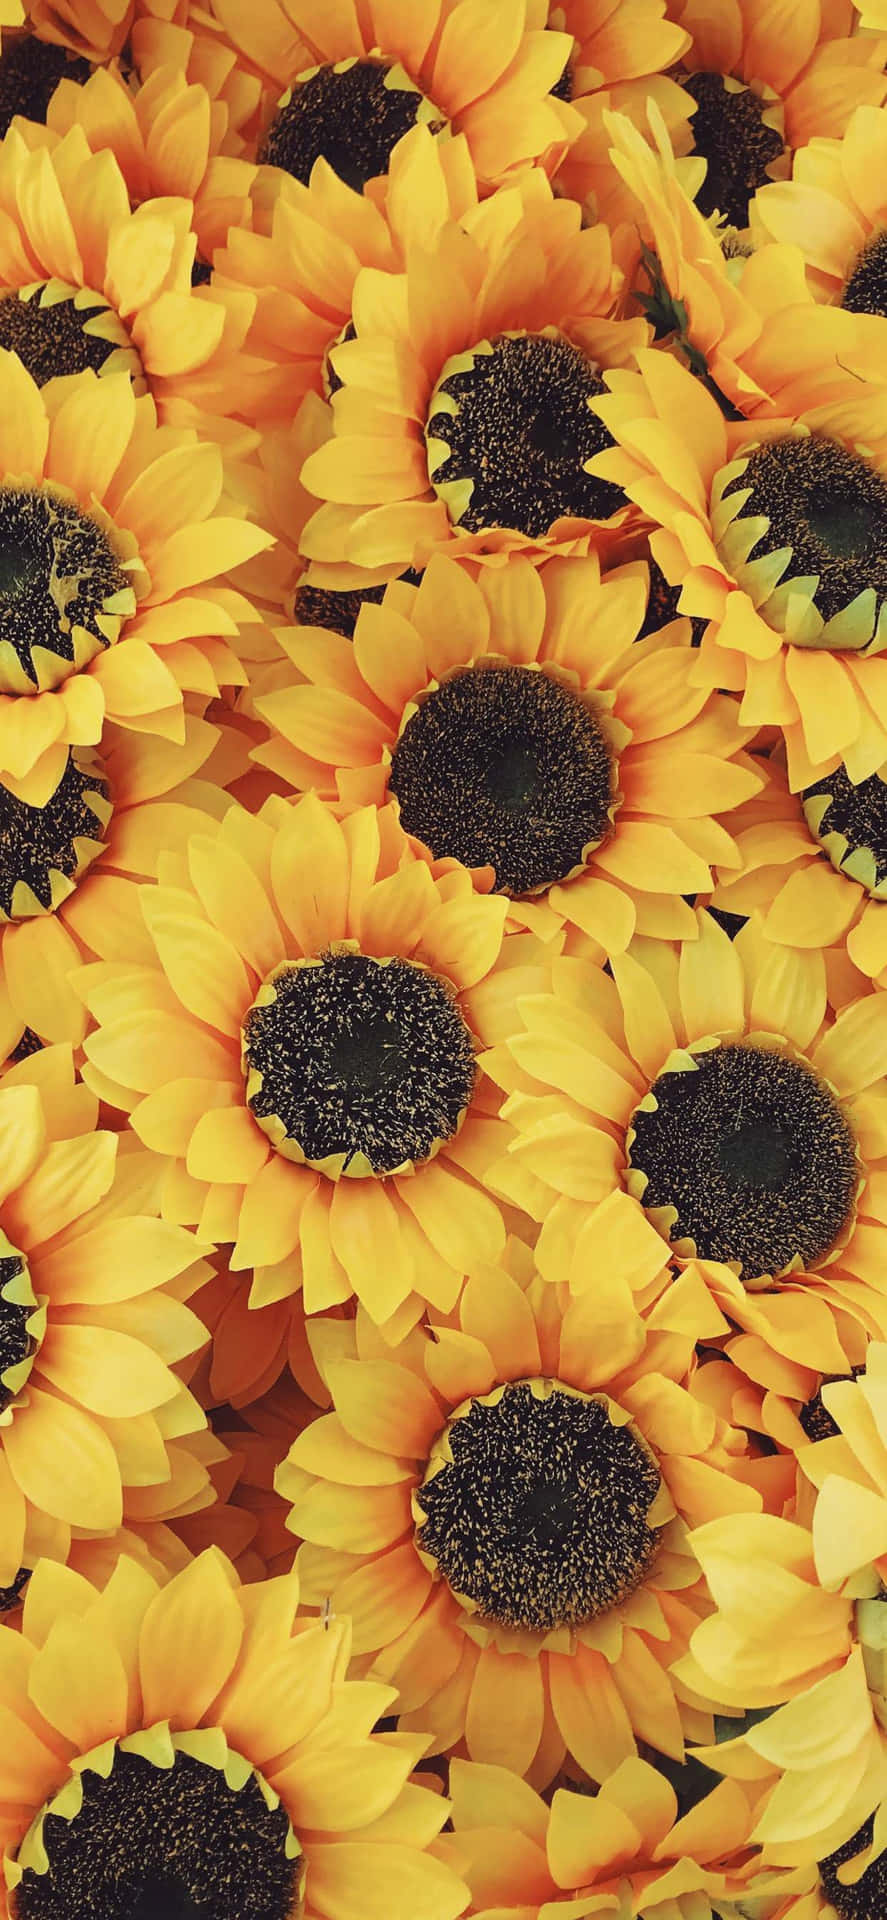 Tilføj lidt farve og liv til din iPhone med dette smukke solsikke æstetiske. Wallpaper